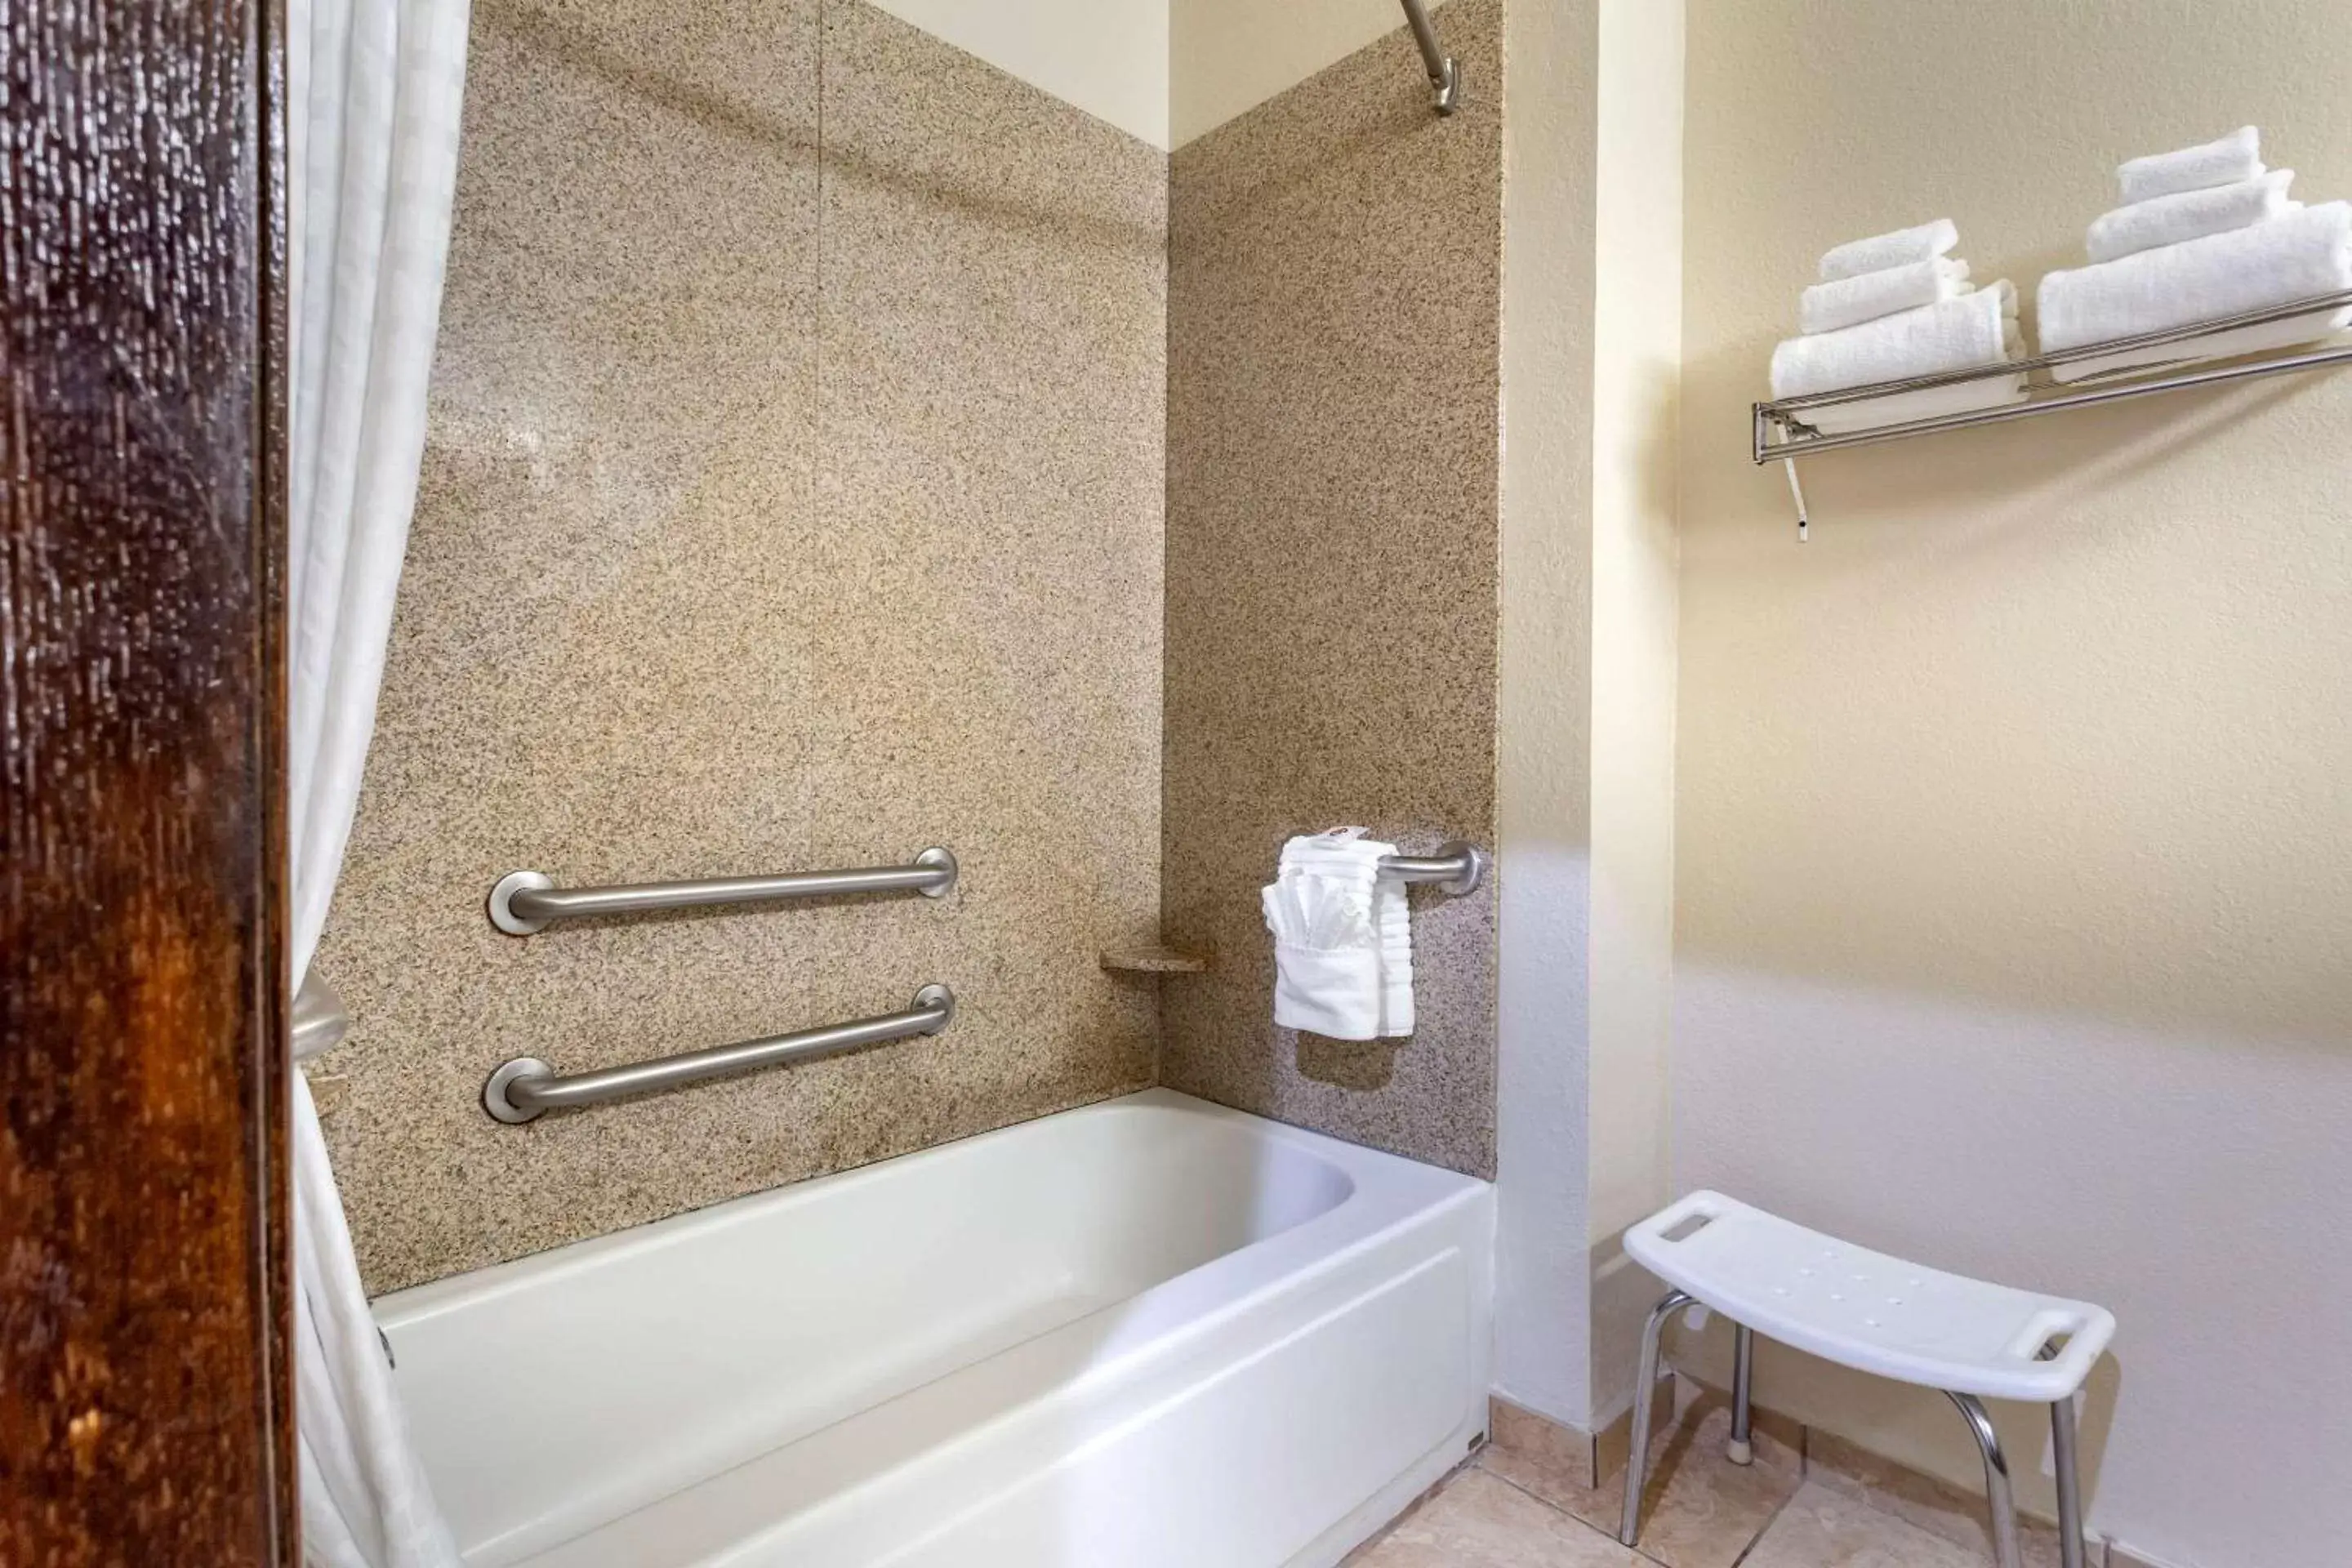 Bathroom in Comfort Inn Hobart - Merrillville